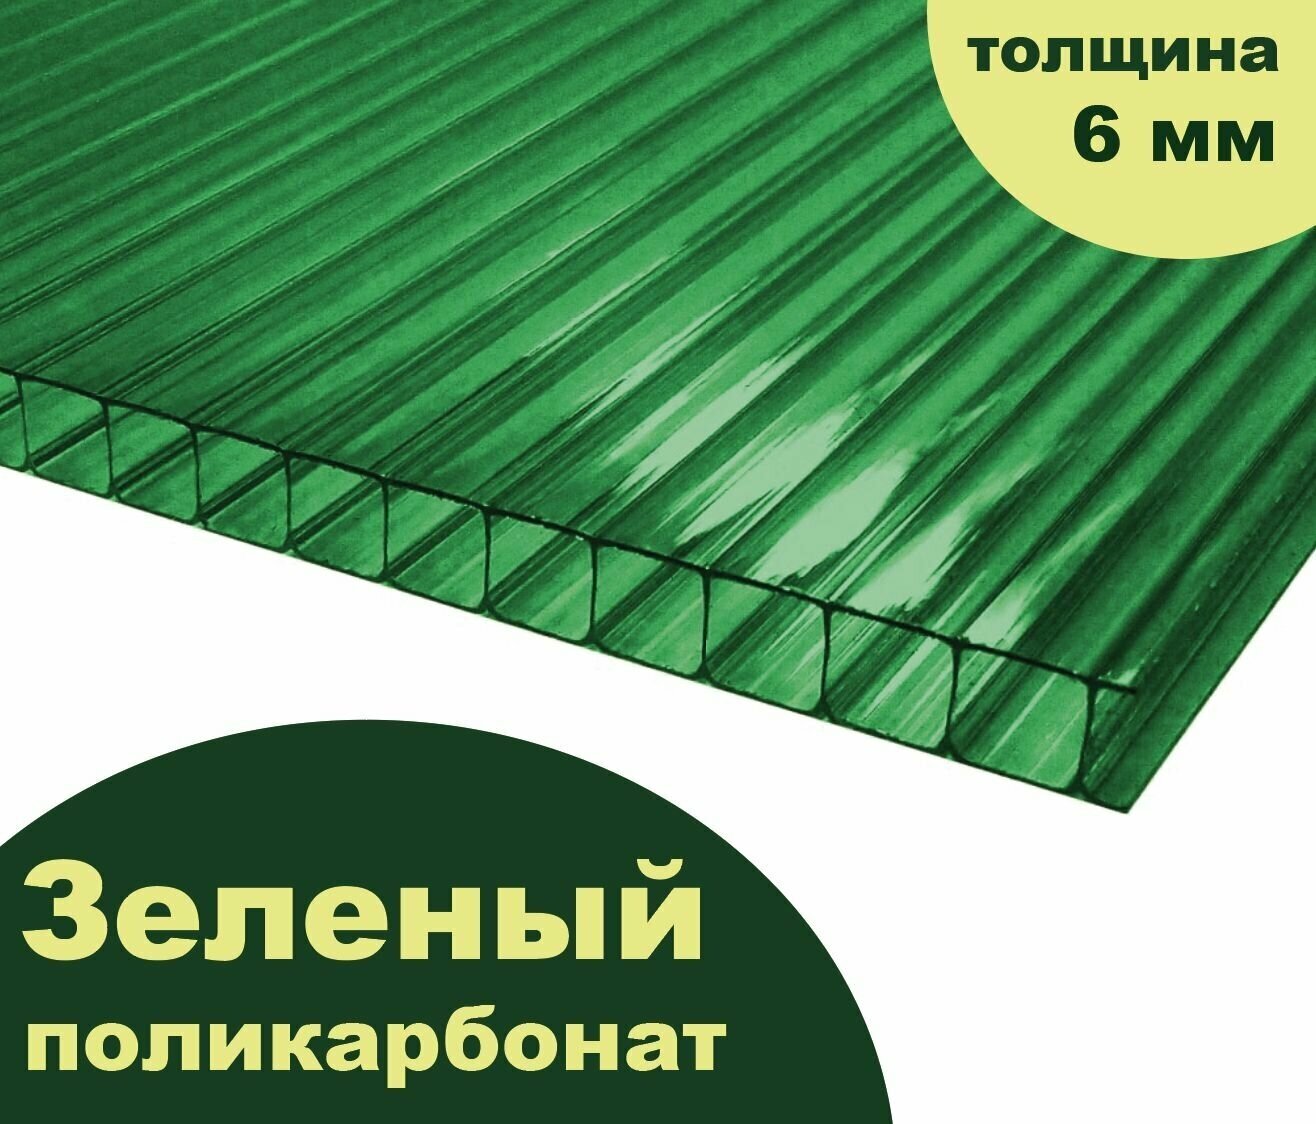 Сотовый поликарбонат зеленый, Ultramarin, 6 мм, 6 метров, 1 лист